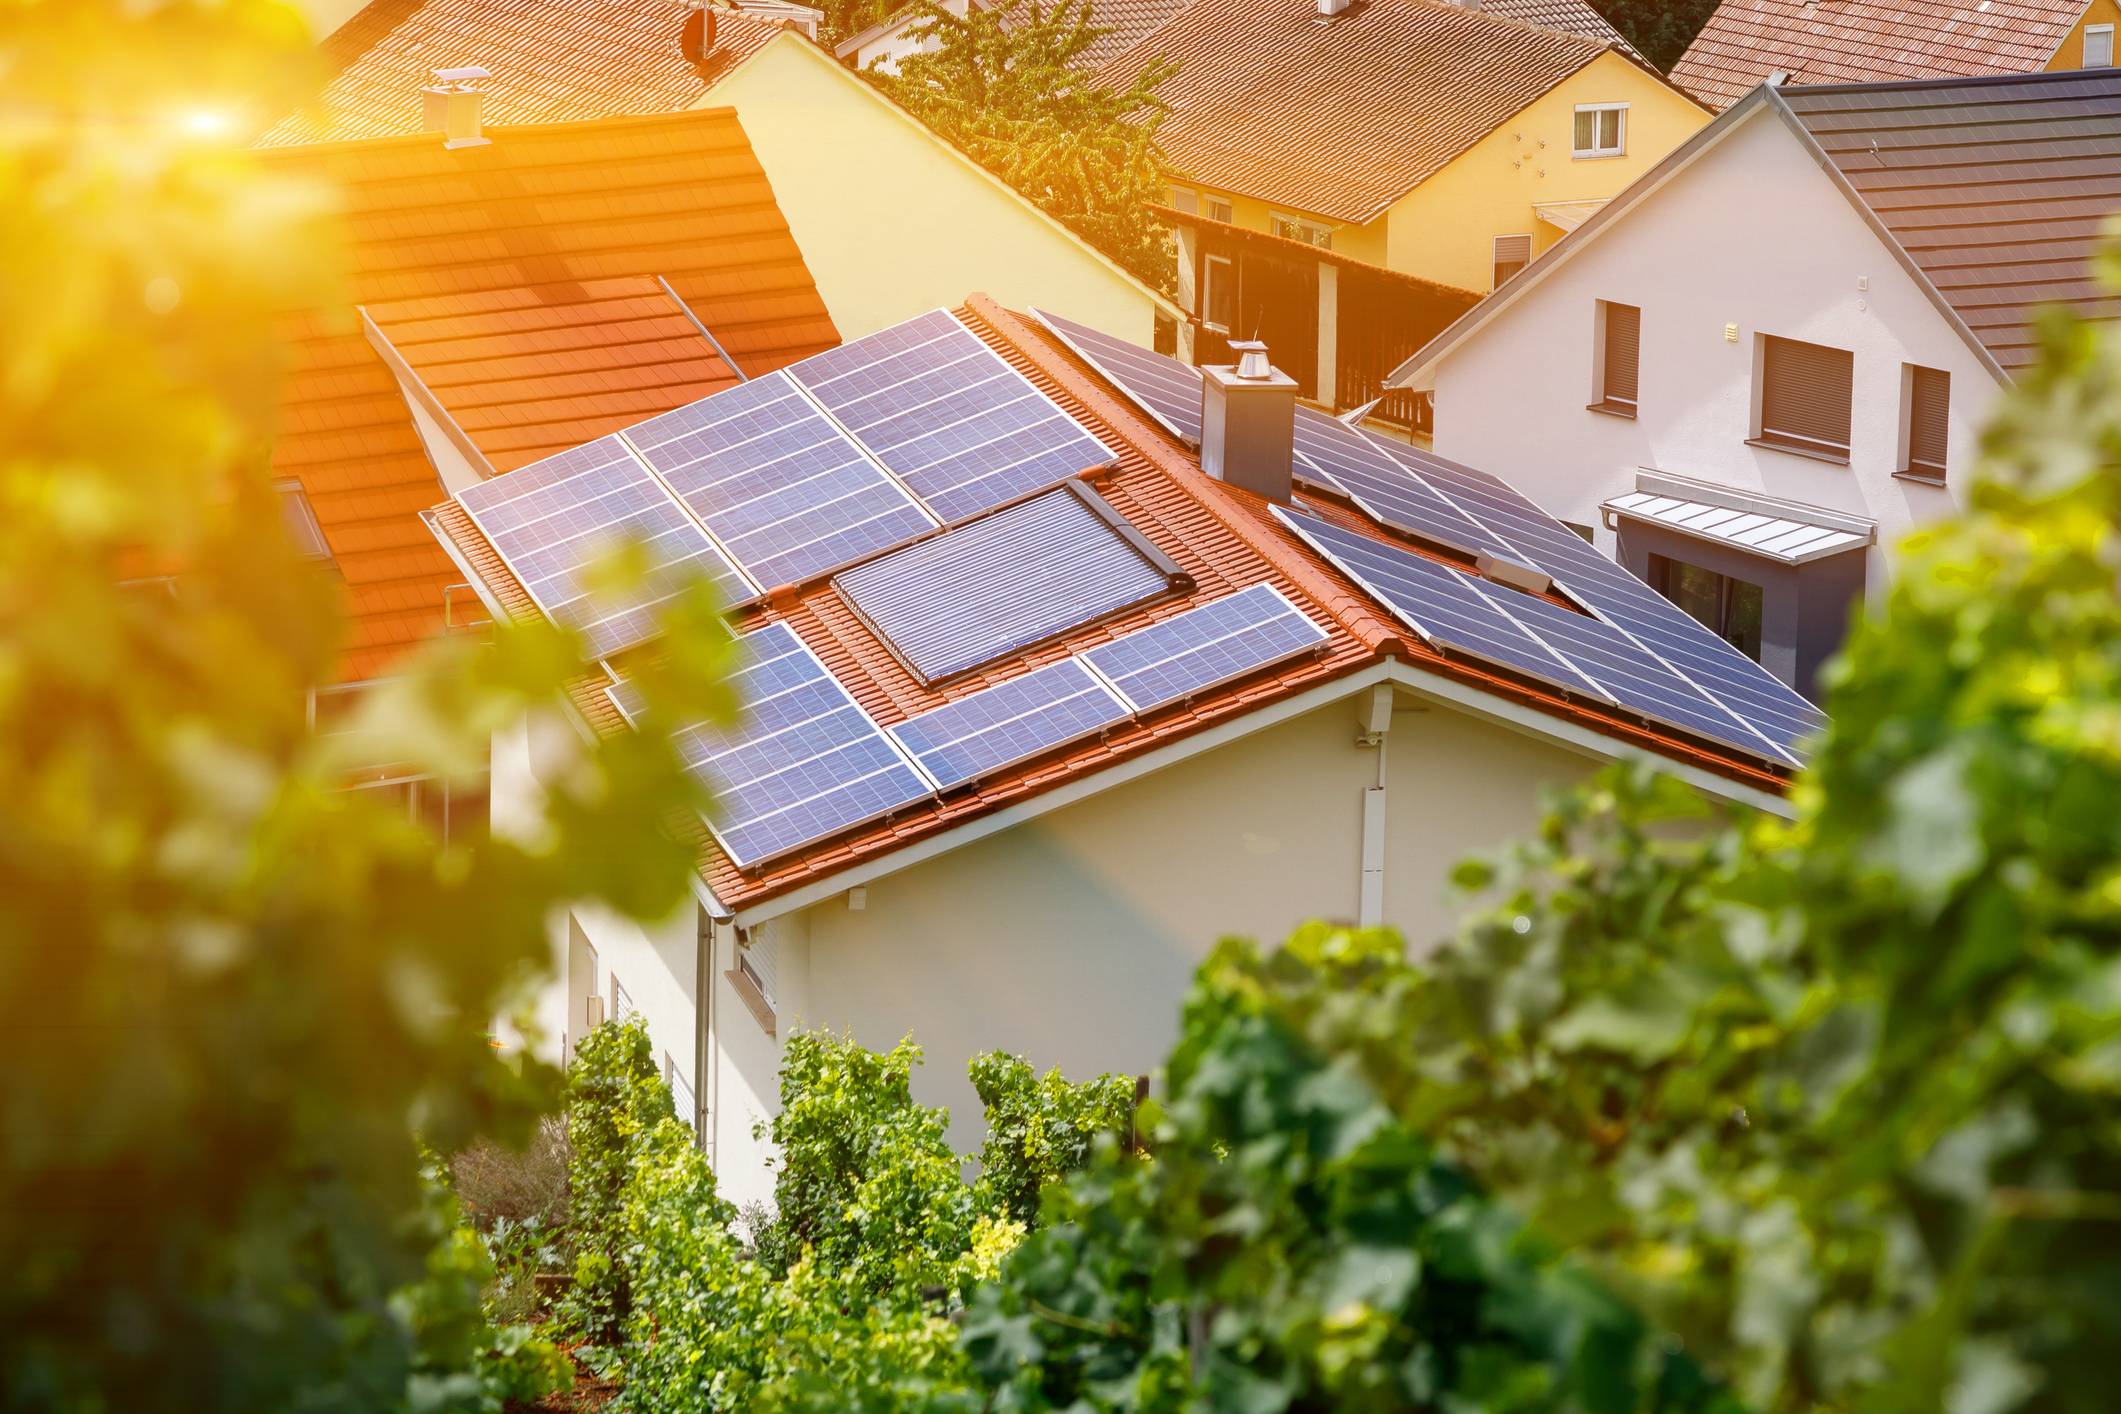 屋顶太阳能安装引纠纷 特斯拉以600多万美元和解集体诉讼